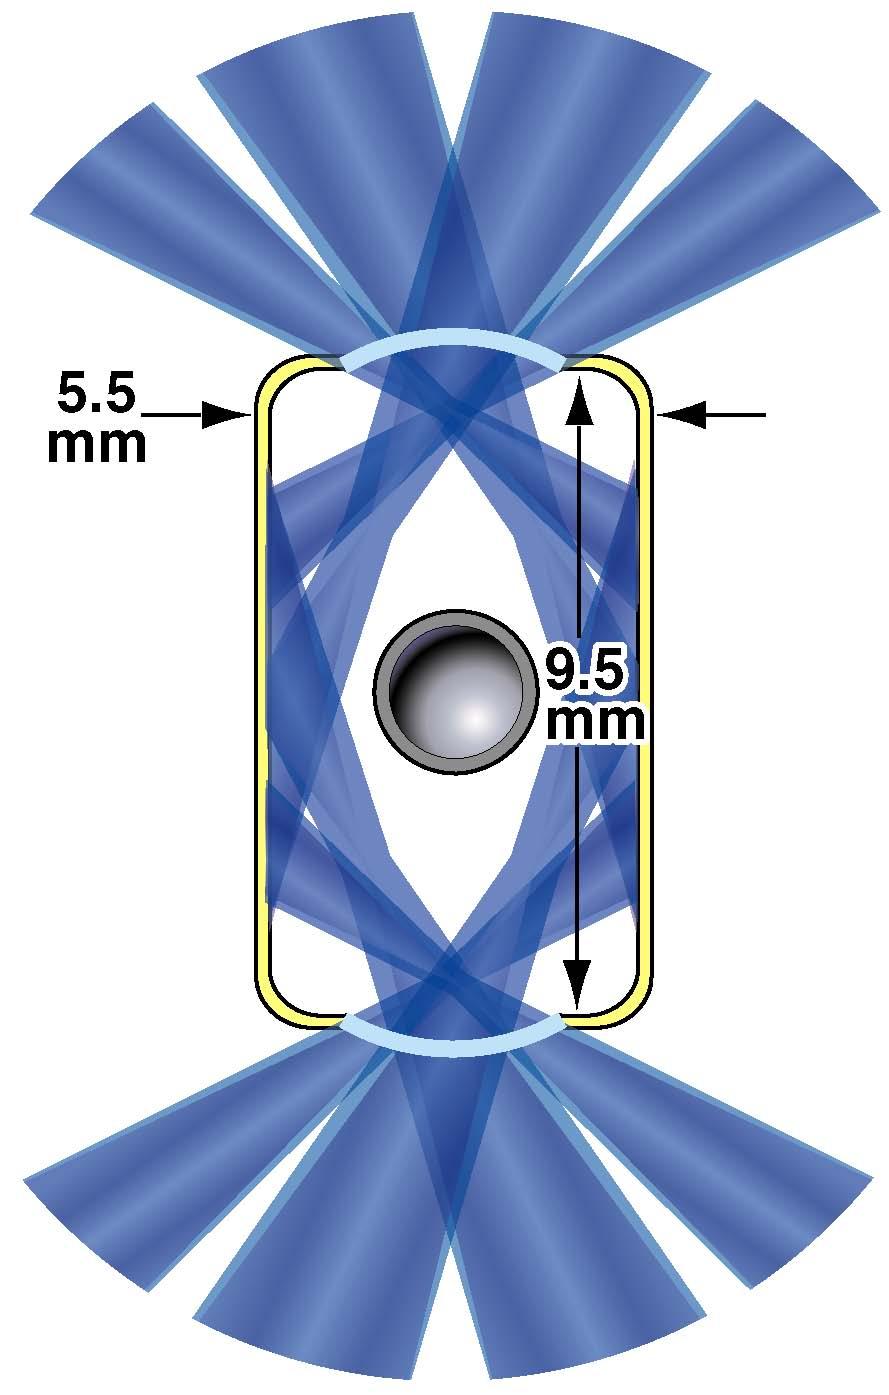 Kapsuła zasłonięta jest przed bezpośrednim oświetleniem przez lasery dwoma przesłonami zaznaczonymi poniżej i powyżej